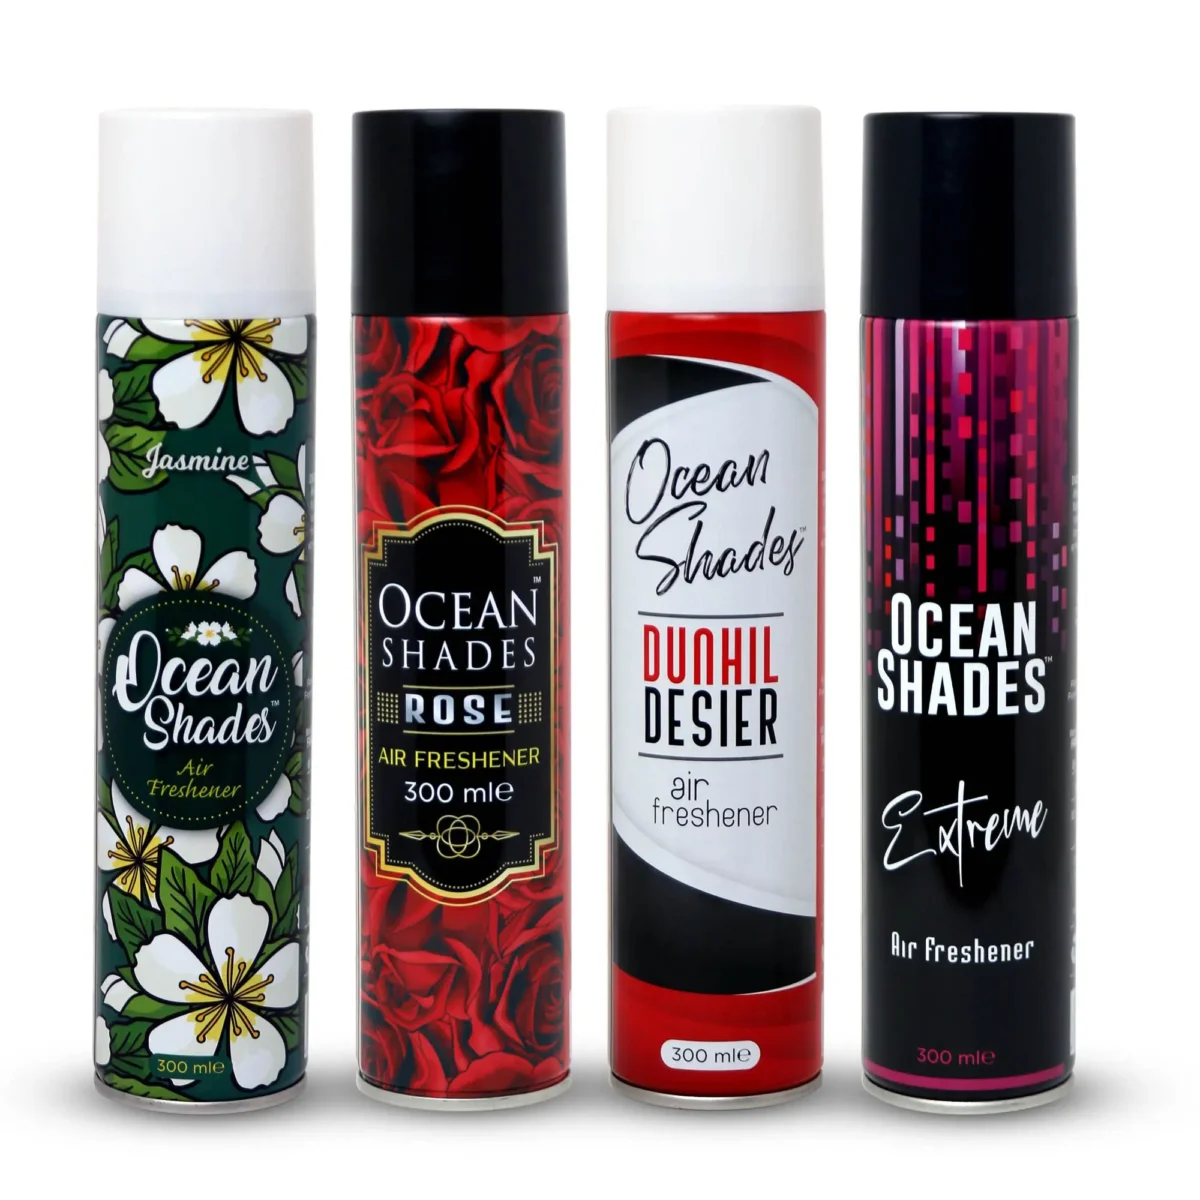 ocean shades Pack of 4 air freshener